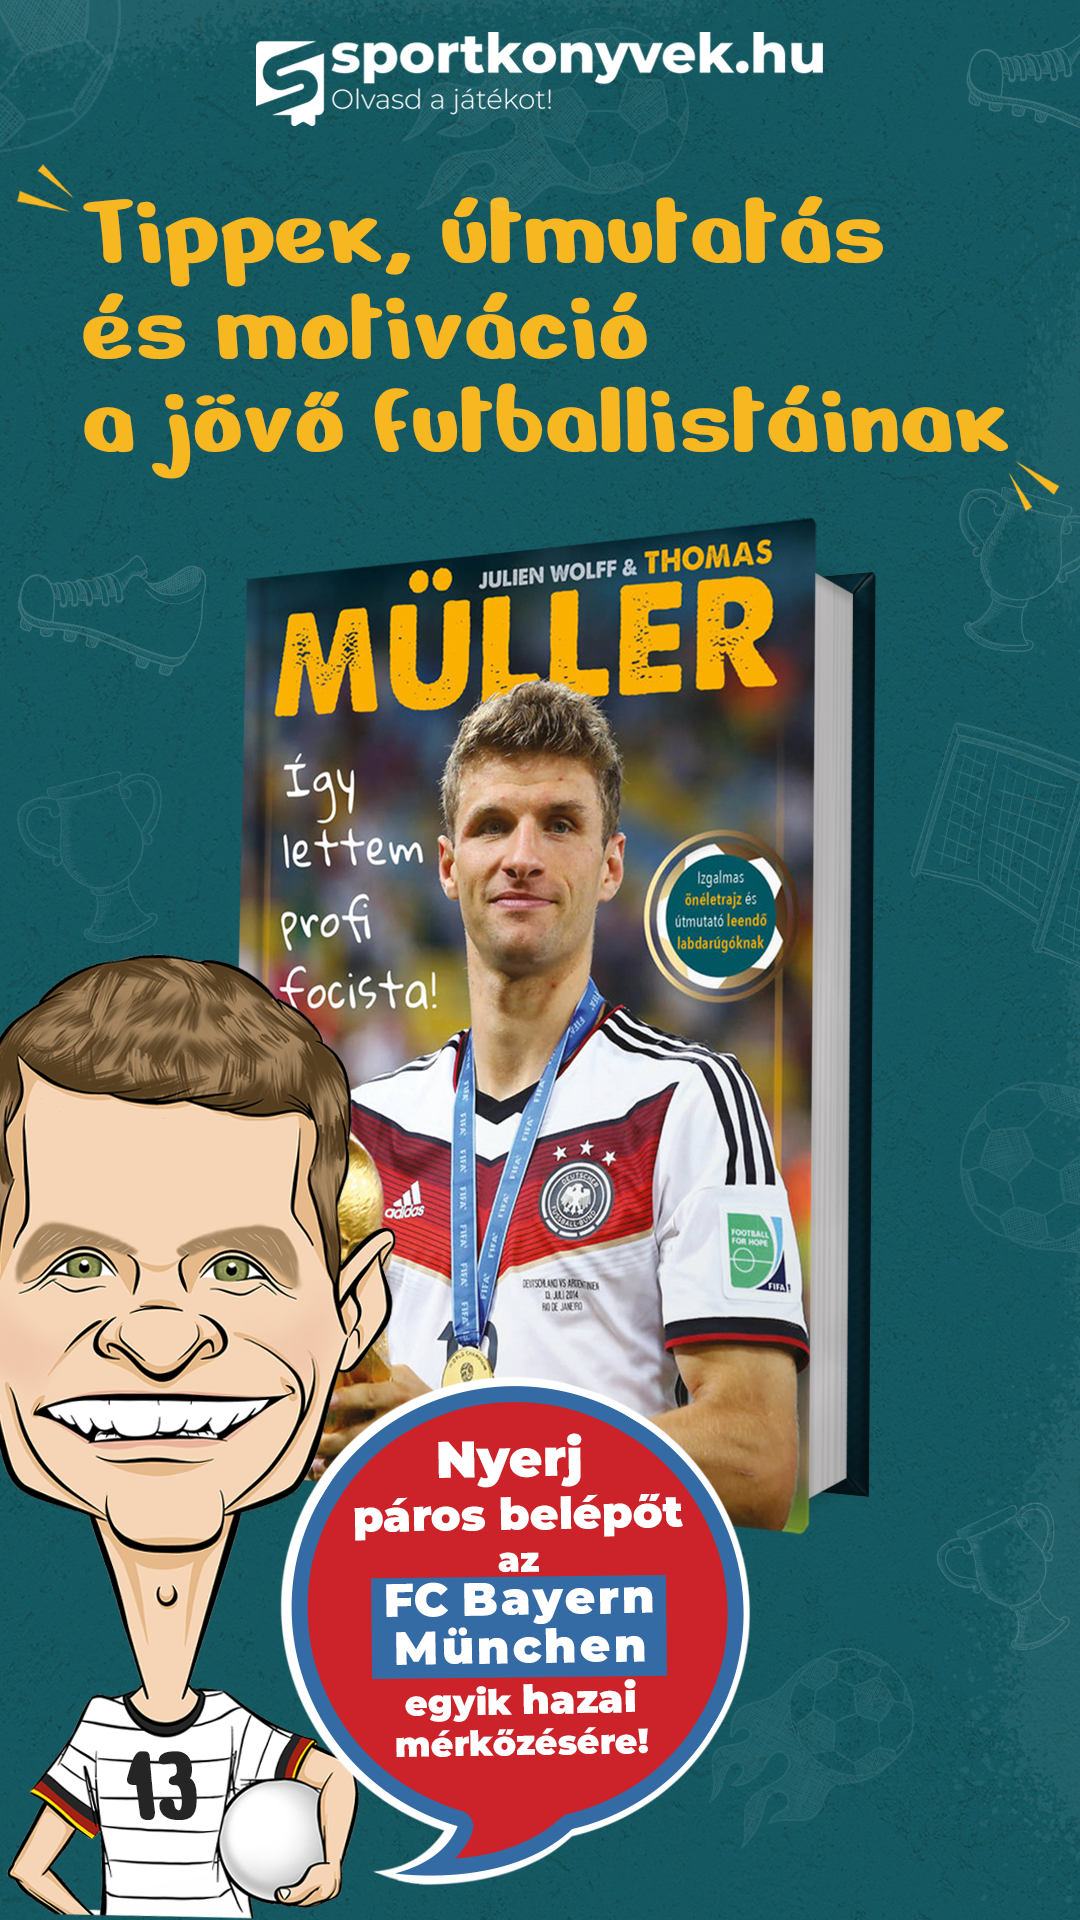 Így lettem profi focista - kvízjáték Thomas Müller önéletrajzi könyvéért